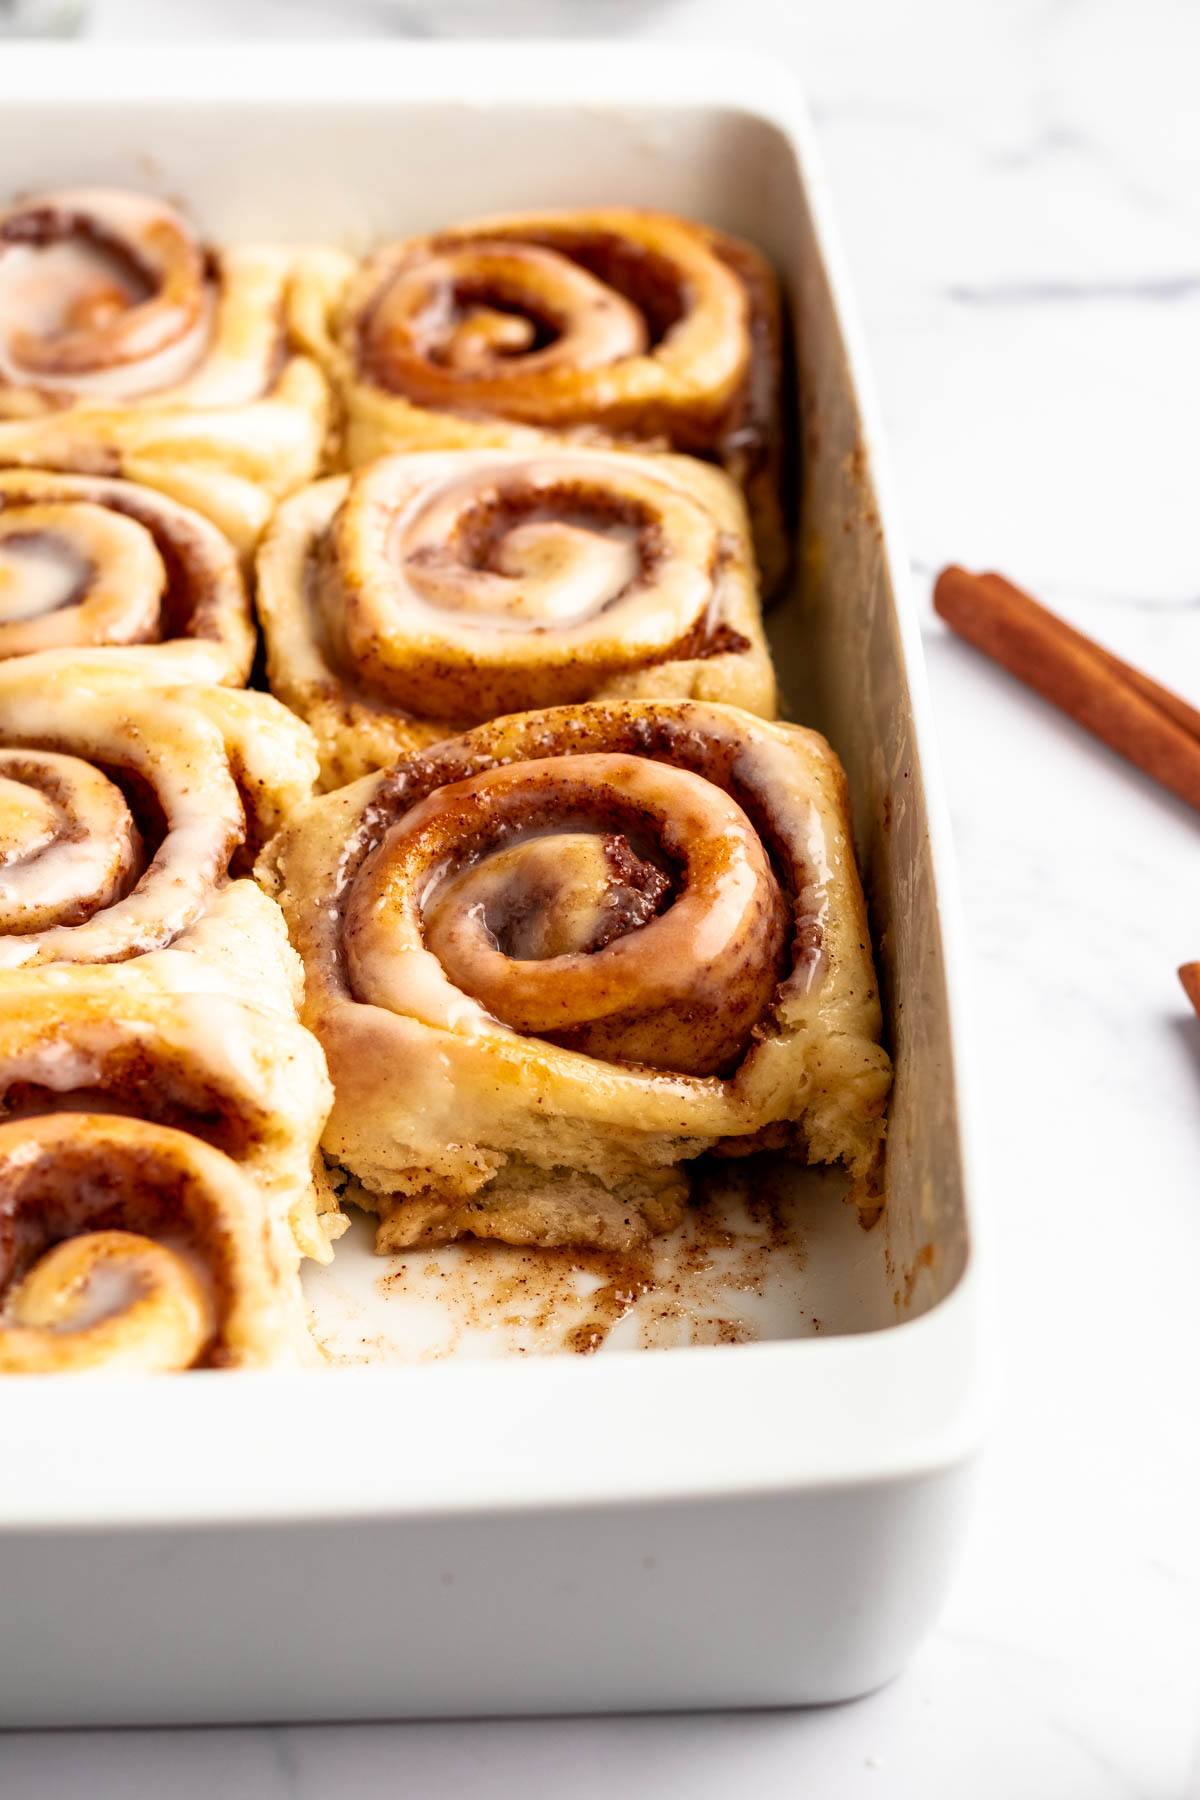 Tiktok cinnamon rolls in a baking pan.